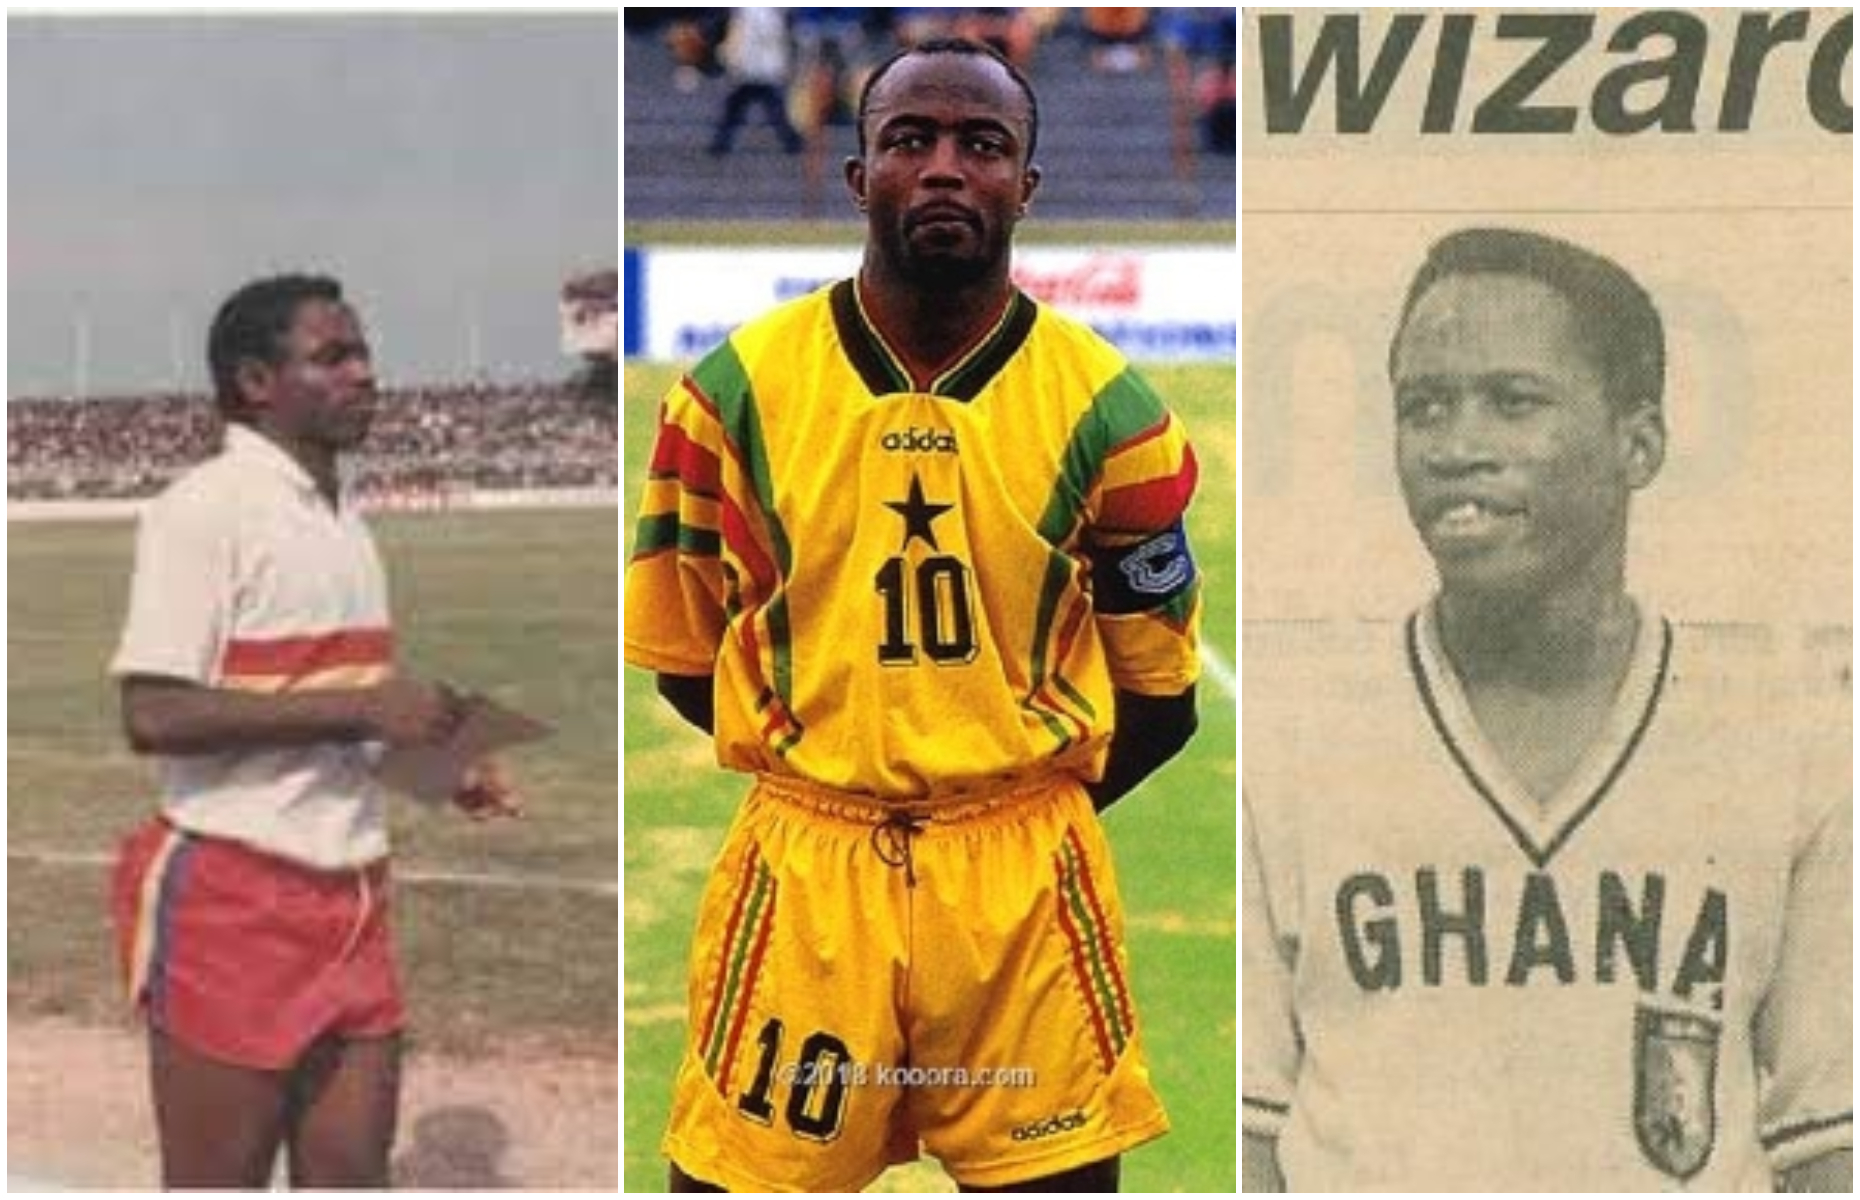 Kudus is a generational talent like Messi and Abedi Pele - Osei Kofi